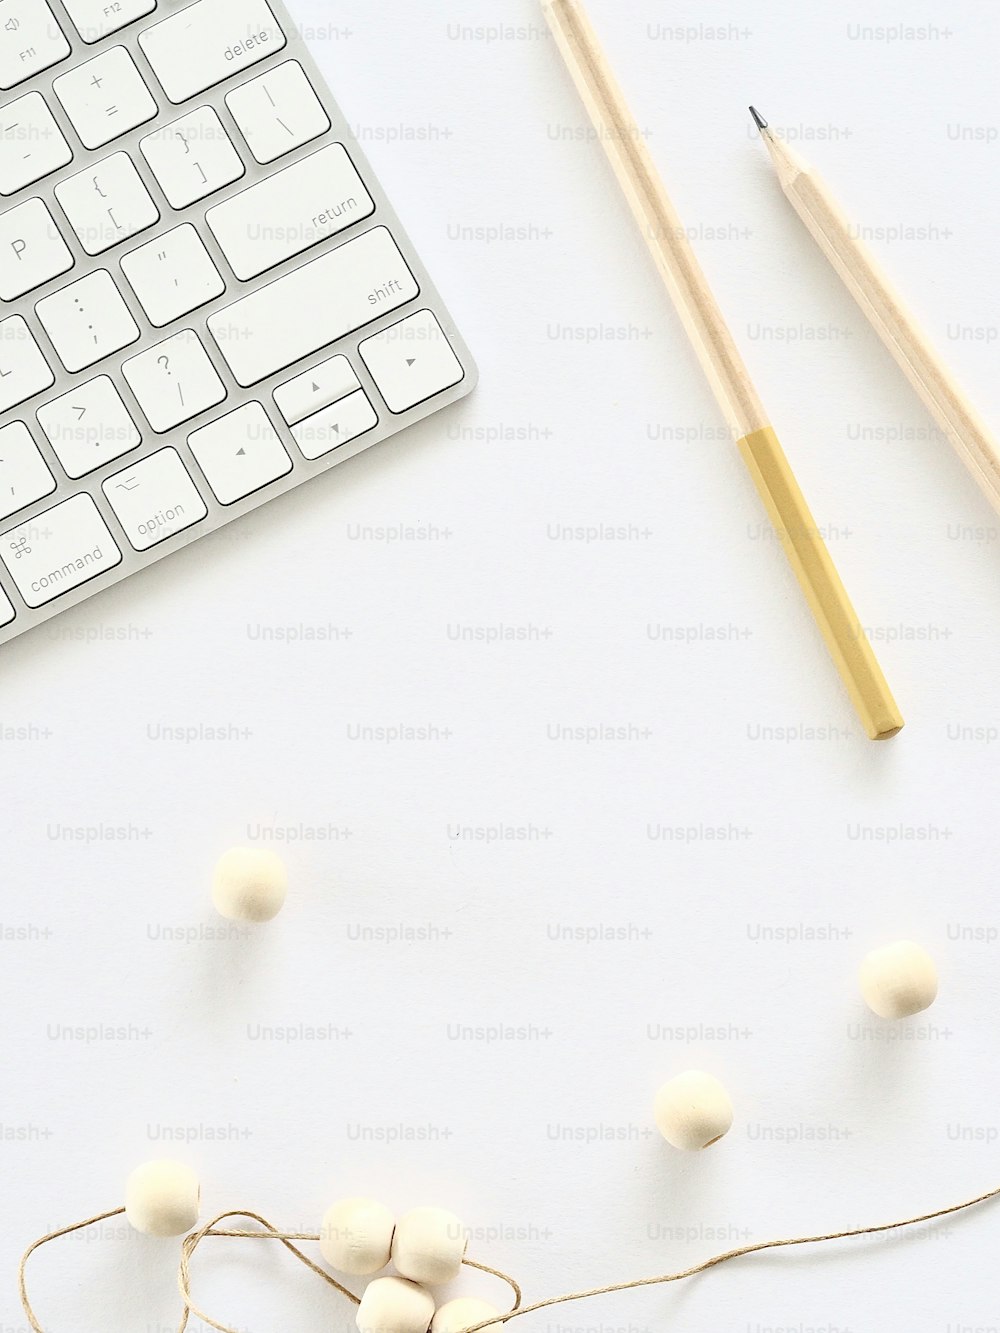 eine Tastatur, Bleistifte und Garnknäuel auf weißer Fläche